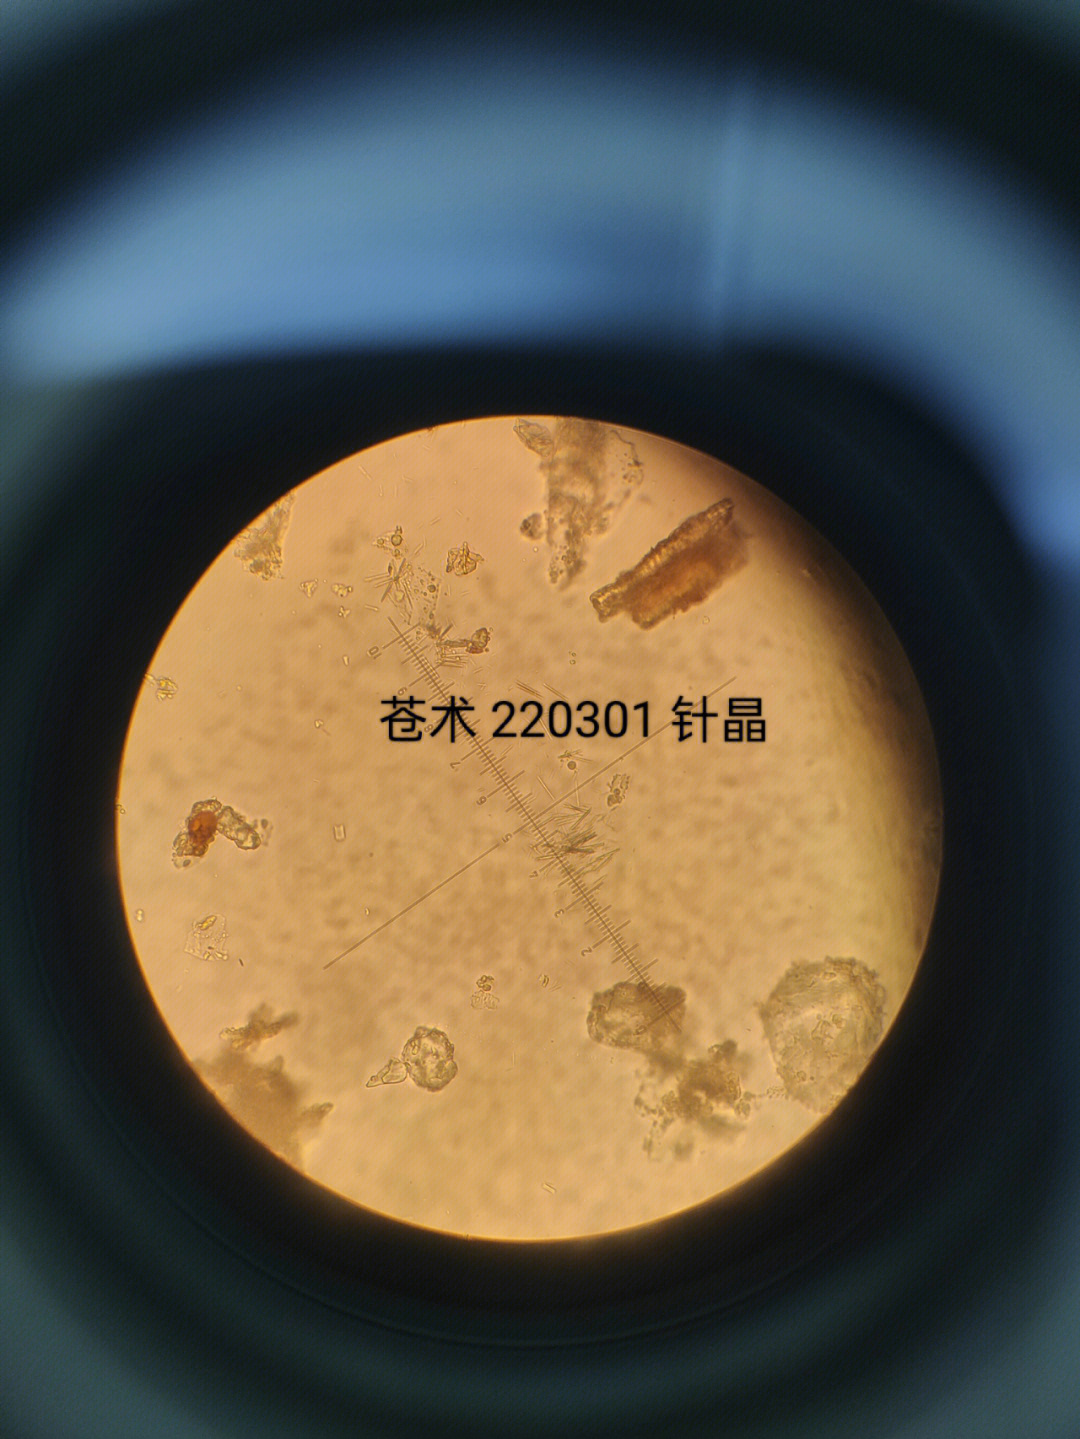 麻黄粉末显微特征图图片